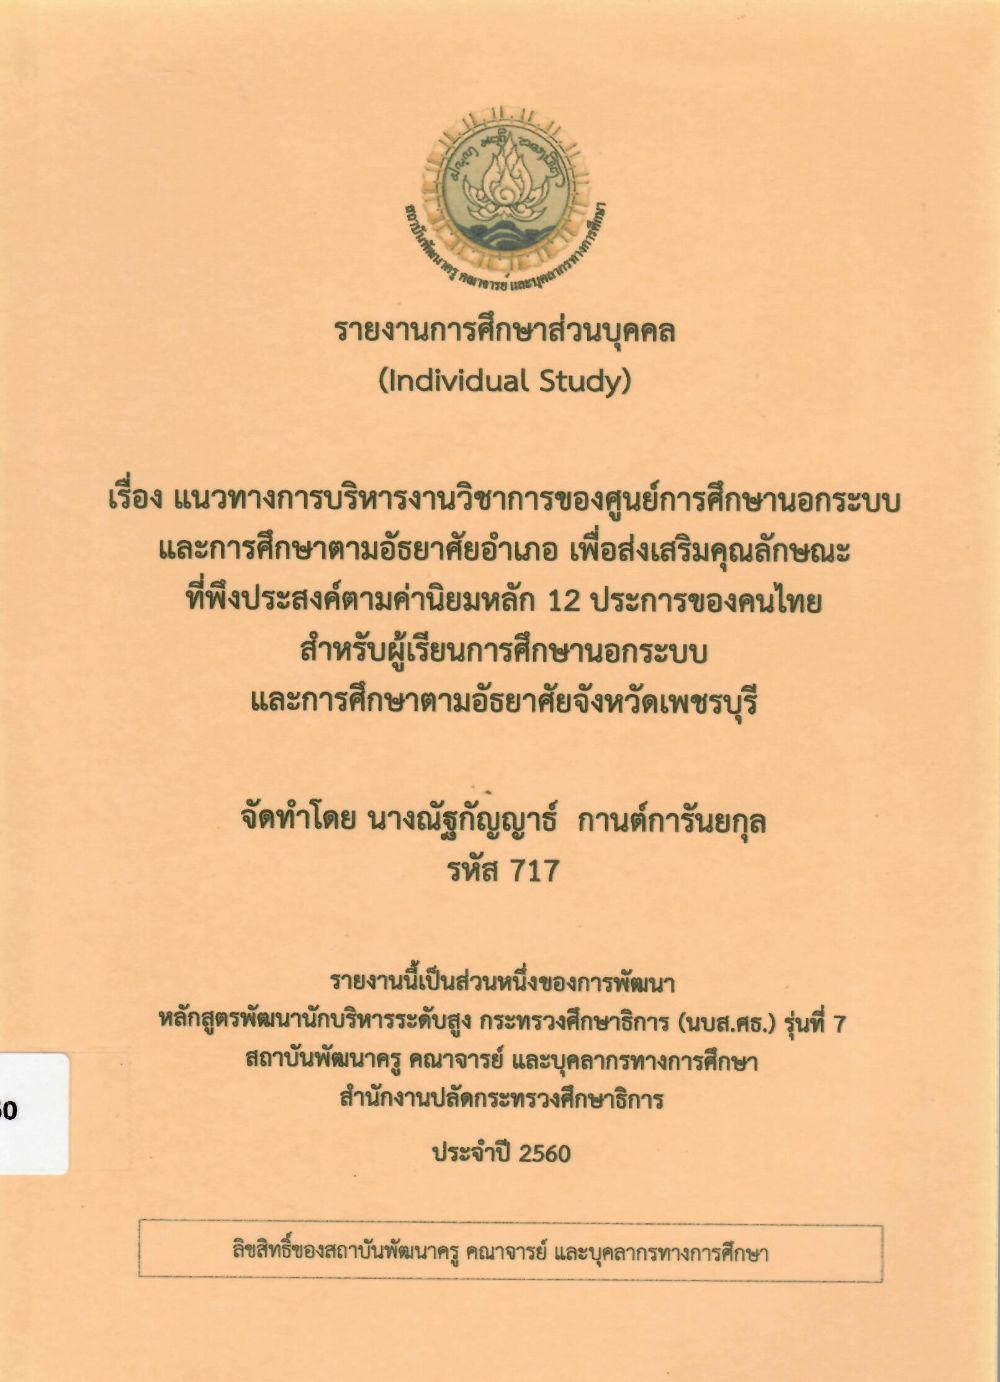 แนวทางการบริหารงานวิชาการของศูนย์การศึกษานอกระบบและการศึกษาตามอัธยาศัยอำเภอ เพื่อส่งเสริมคุณลักษณะที่พึงประสงค์ตามค่านิยมหลัก 12 ประการของคนไทย สำหรับผู้เรียนการศึกษานอกระบบและการศึกษาตามอัธยาศัยจังหวัดเพชรบุรี: รายงานการศึกษาส่วนบุคคล (Individual Study)/ ณัฐกัญญาธ์ กานต์การันยกุล